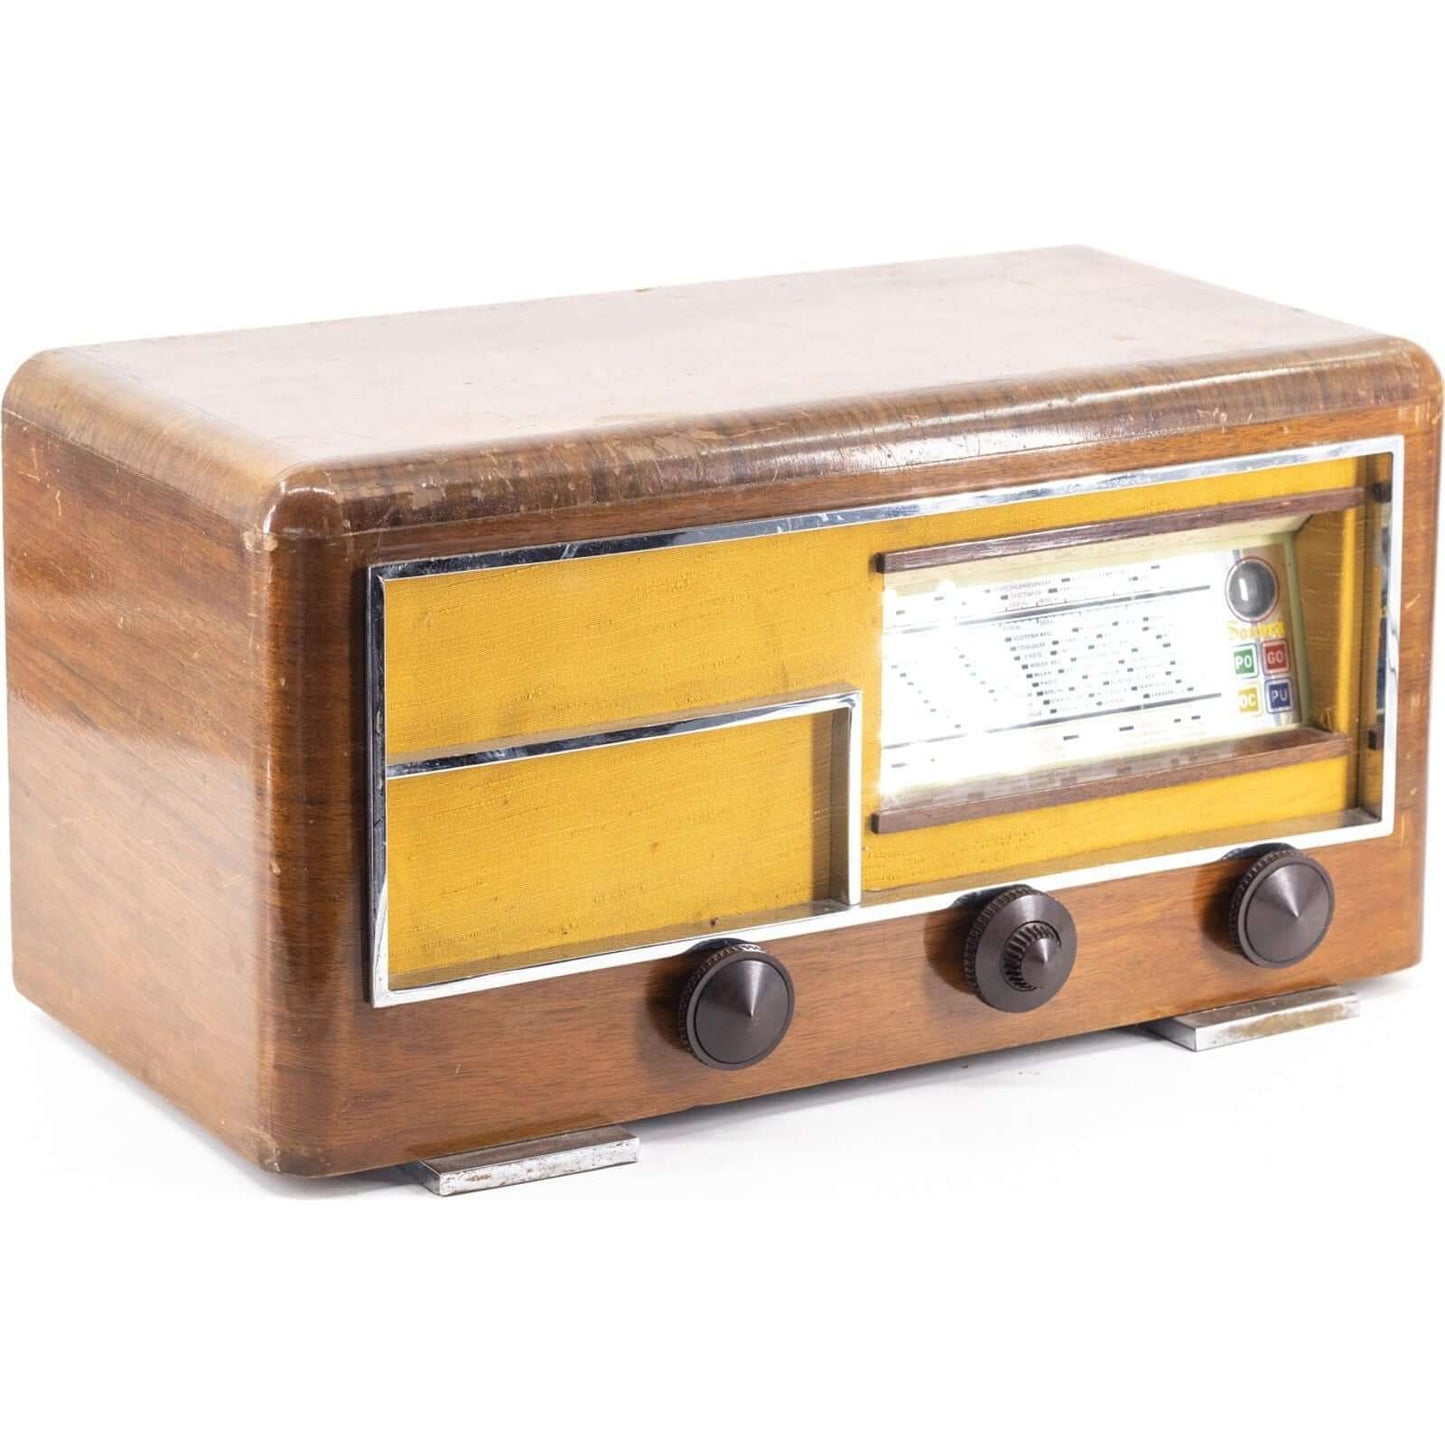 Radio Bluetooth Sonora Vintage 40’S enceinte connectée française haut de gamme absolument prodige radio vintage